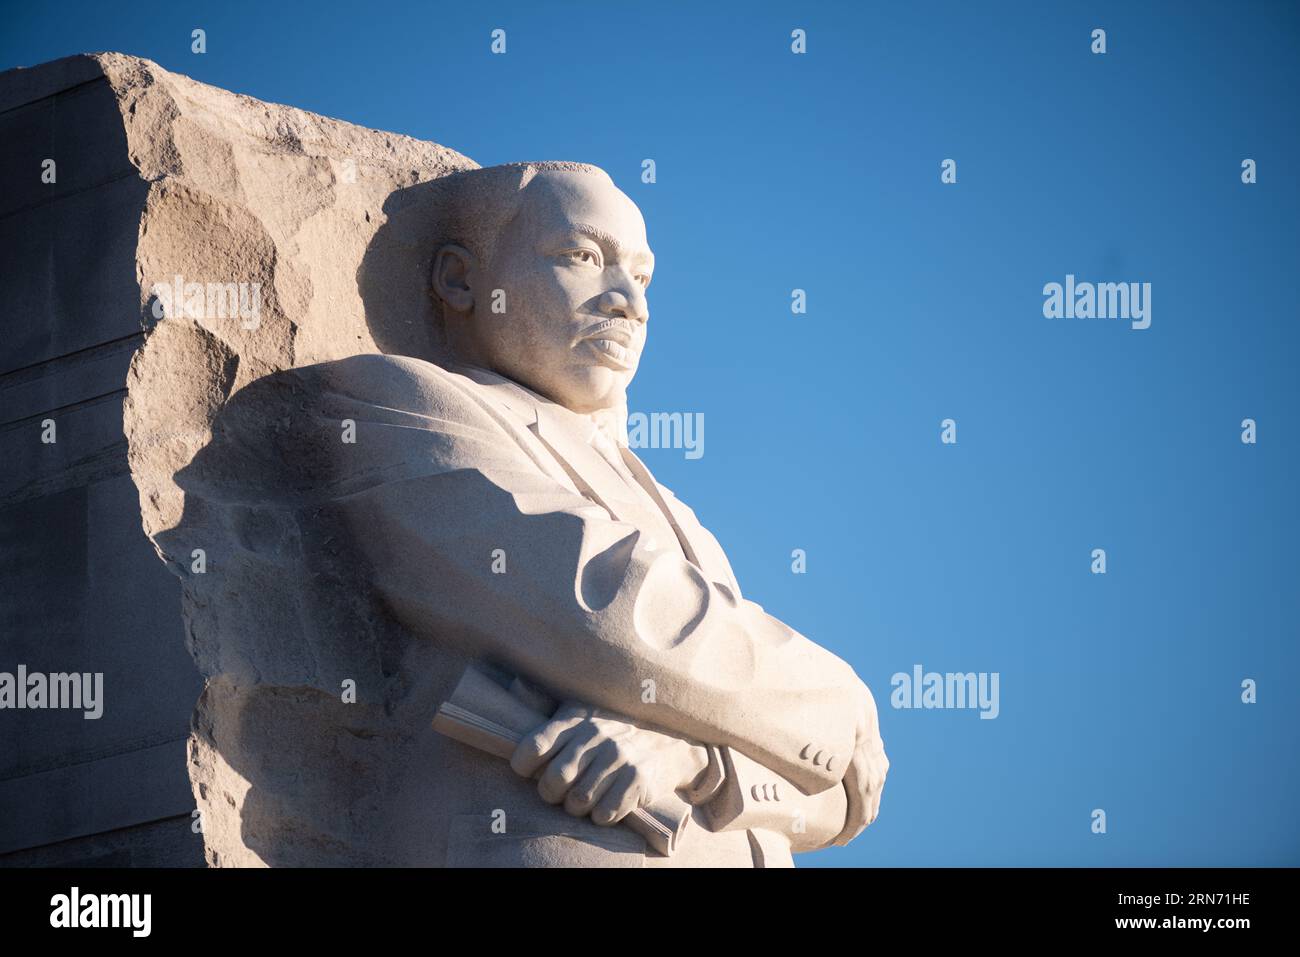 WASHINGTON DC, Vereinigte Staaten – der Martin Luther King Jr. Das Memorial erinnert an das beständige Erbe des Bürgerrechtlers. Das Denkmal, das sich am Tidal Basin der National Mall befindet, erinnert an Dr. Kings Beiträge zur amerikanischen Bürgerrechtsbewegung und an sein Streben nach Gerechtigkeit mit gewaltfreien Mitteln. Stockfoto